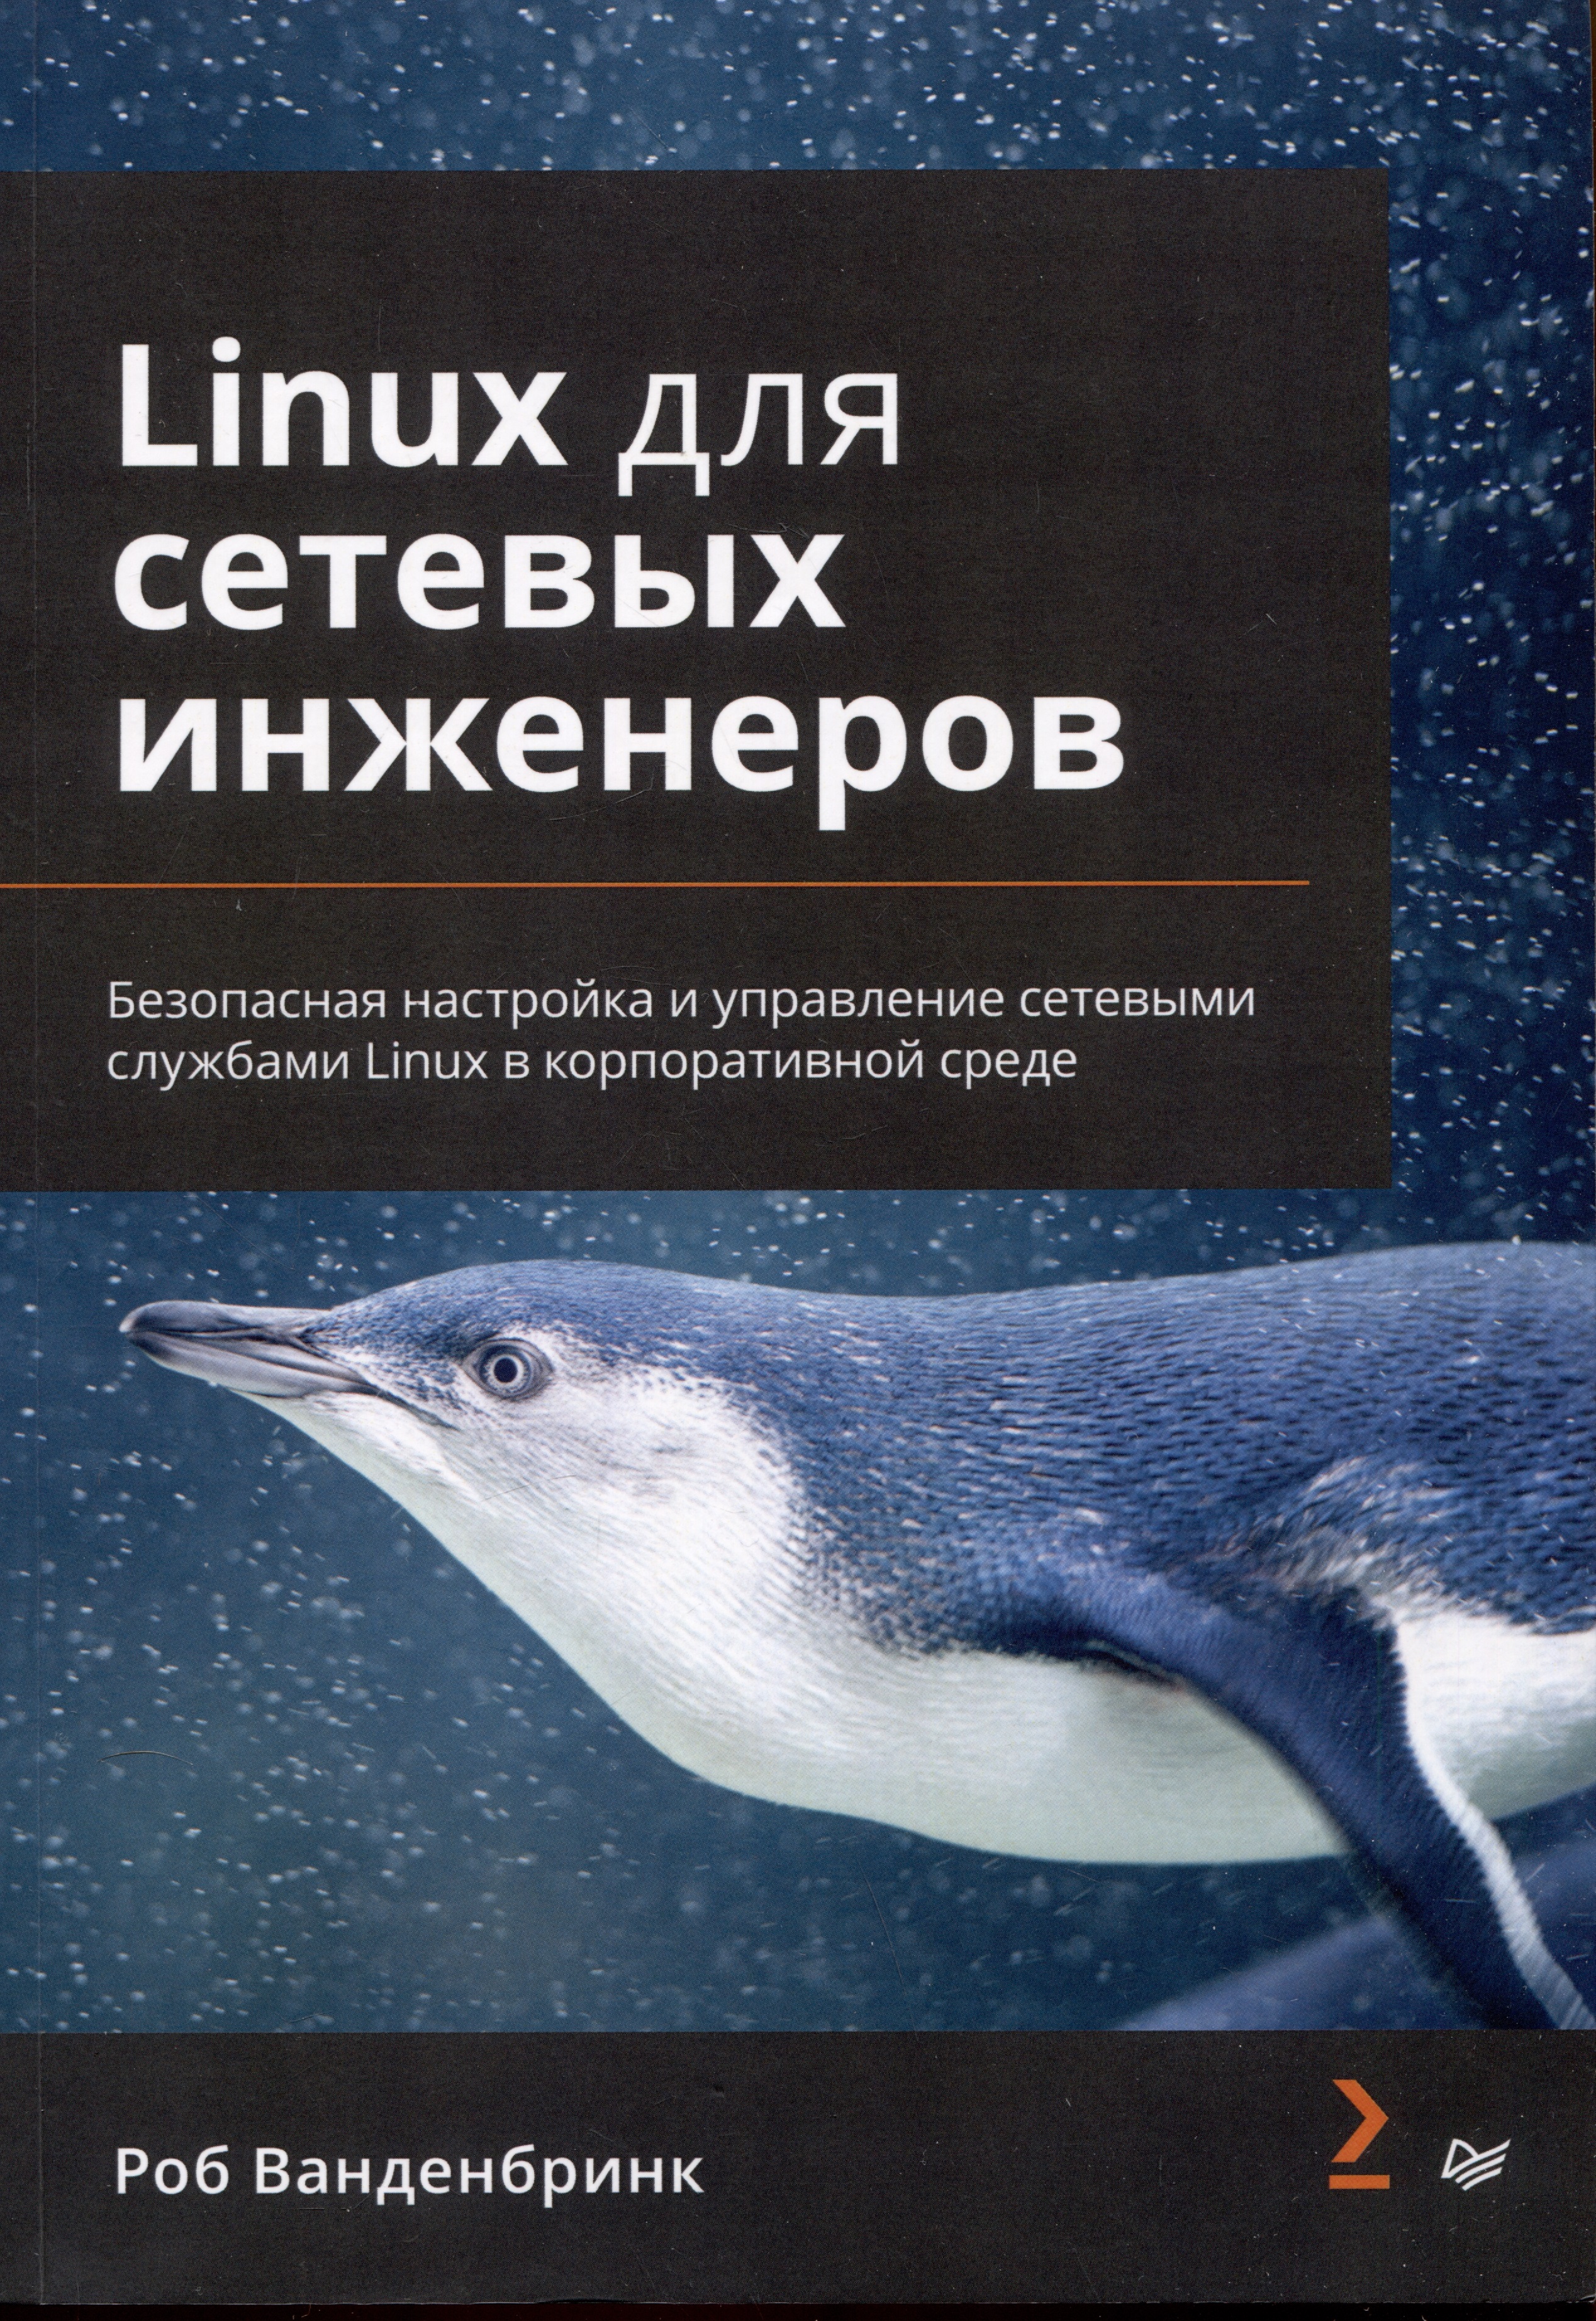 Ванденбринк Роб Linux для сетевых инженеров